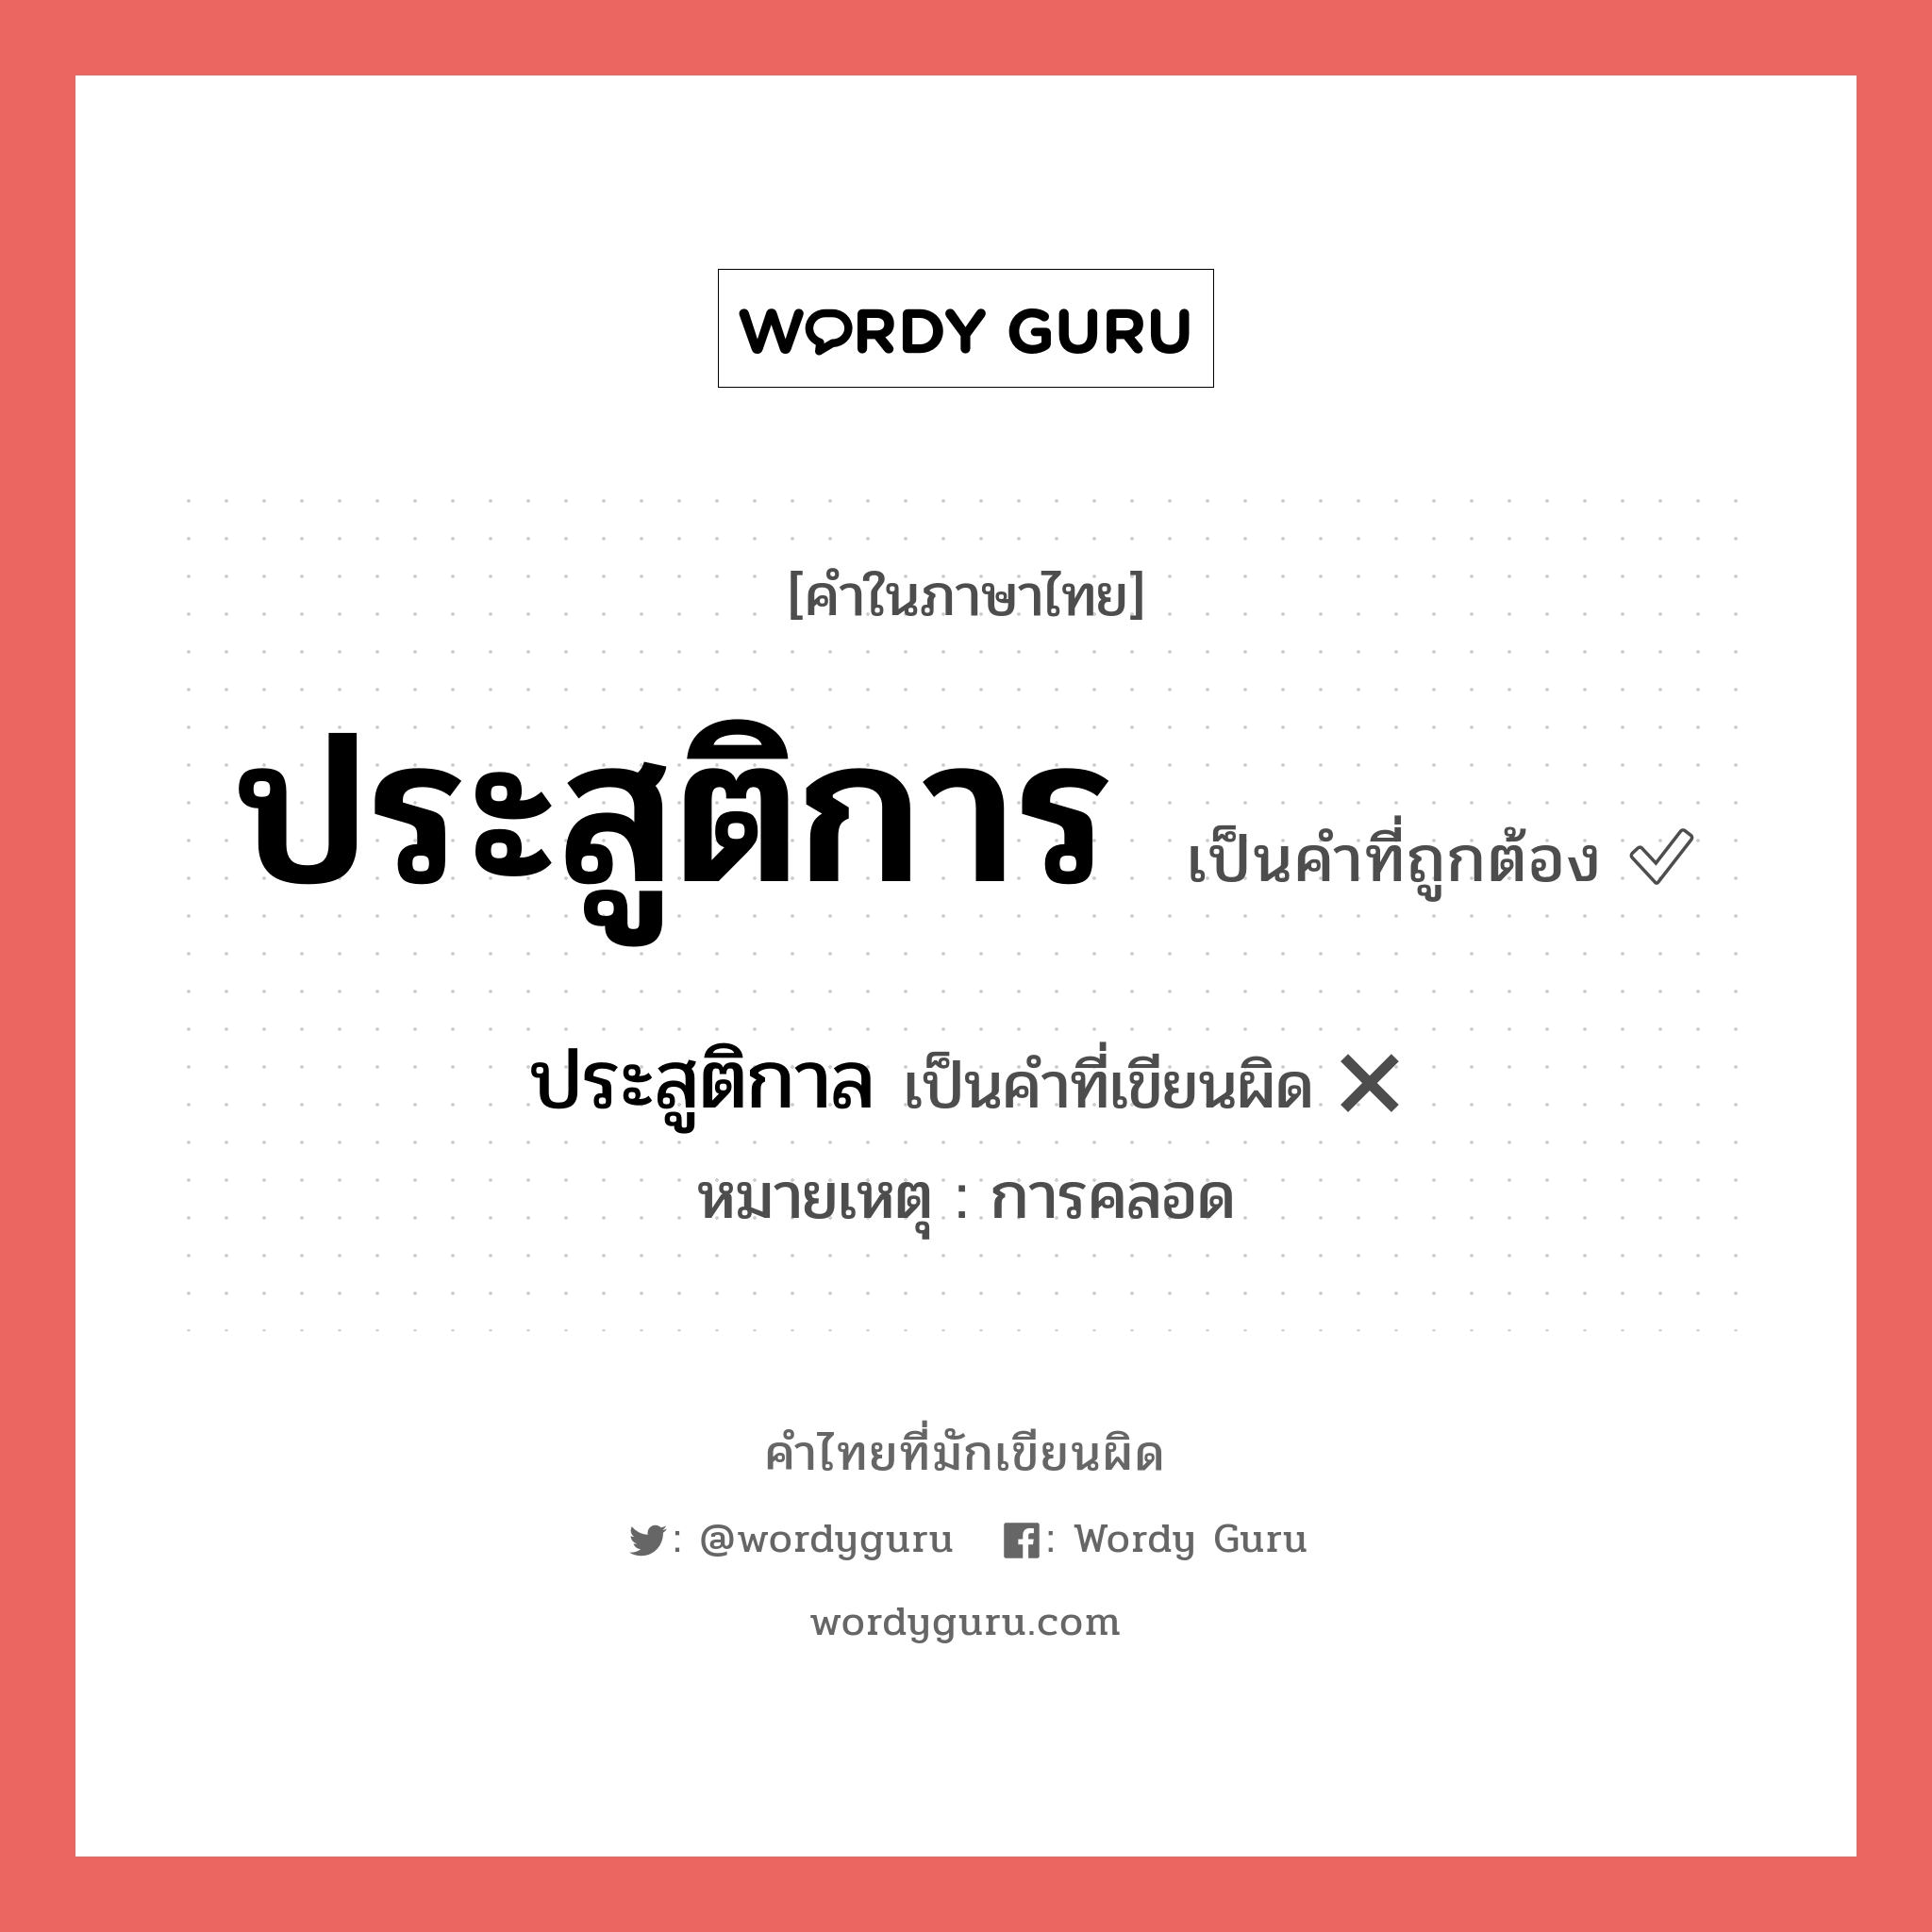 ประสูติการ หรือ ประสูติกาล คำไหนเขียนถูก?, คำในภาษาไทยที่มักเขียนผิด ประสูติกาล คำที่ผิด ❌ ประสูติการ หมายเหตุ การคลอด